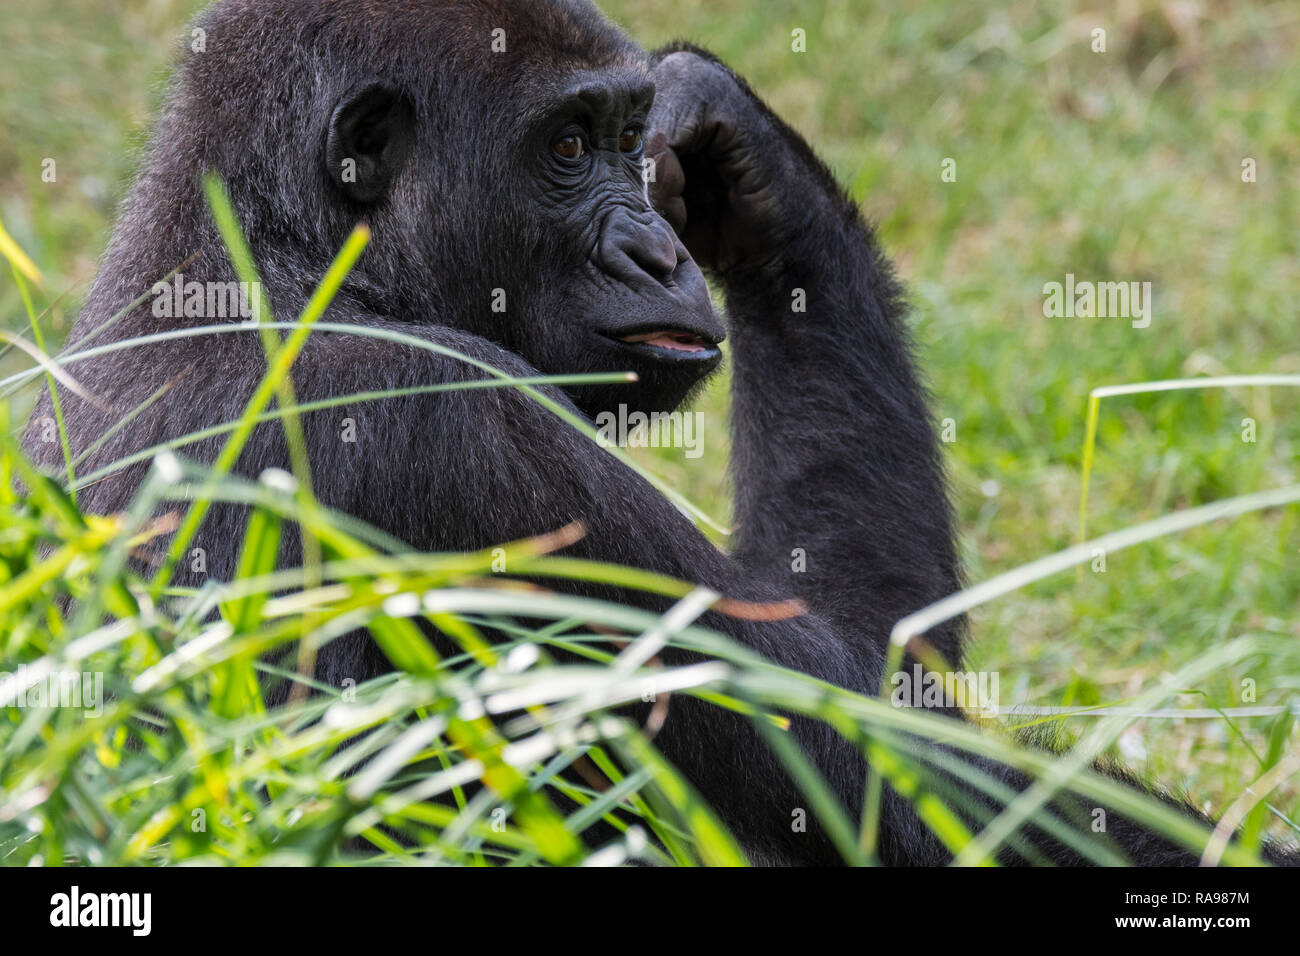 Cerrar retrato del joven gorila de las tierras bajas occidentales (Gorilla gorilla gorilla) nativas de África central Foto de stock